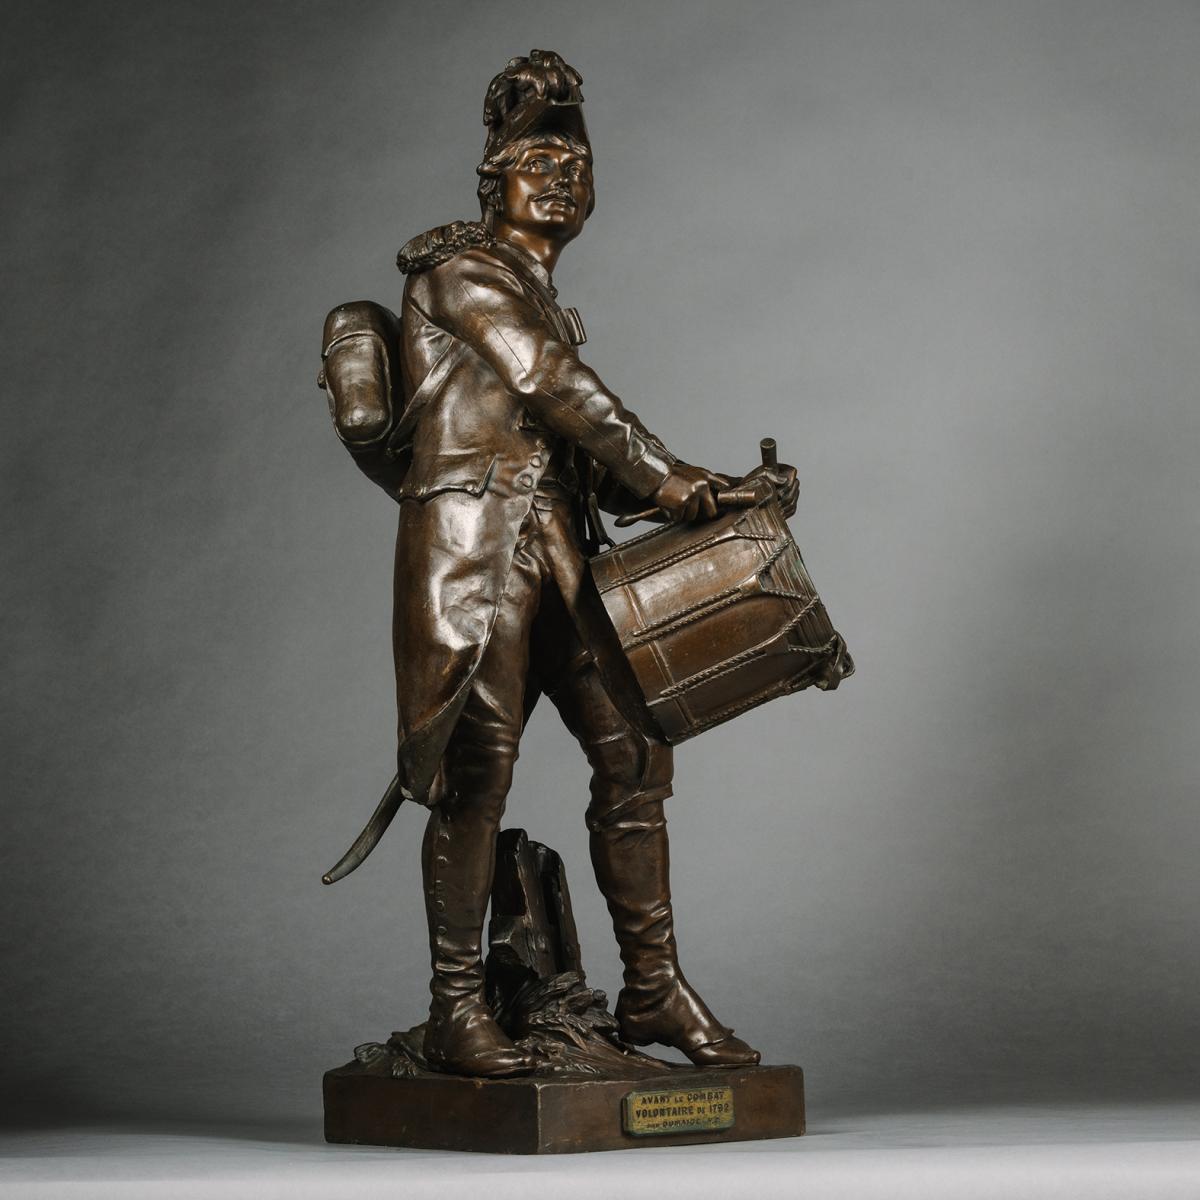 Bronze Figures Entitled 'Avant le Combat' and 'Apres le Combat', Cast from the models by Etienne-Henri Dumaige (1830 - 1888)